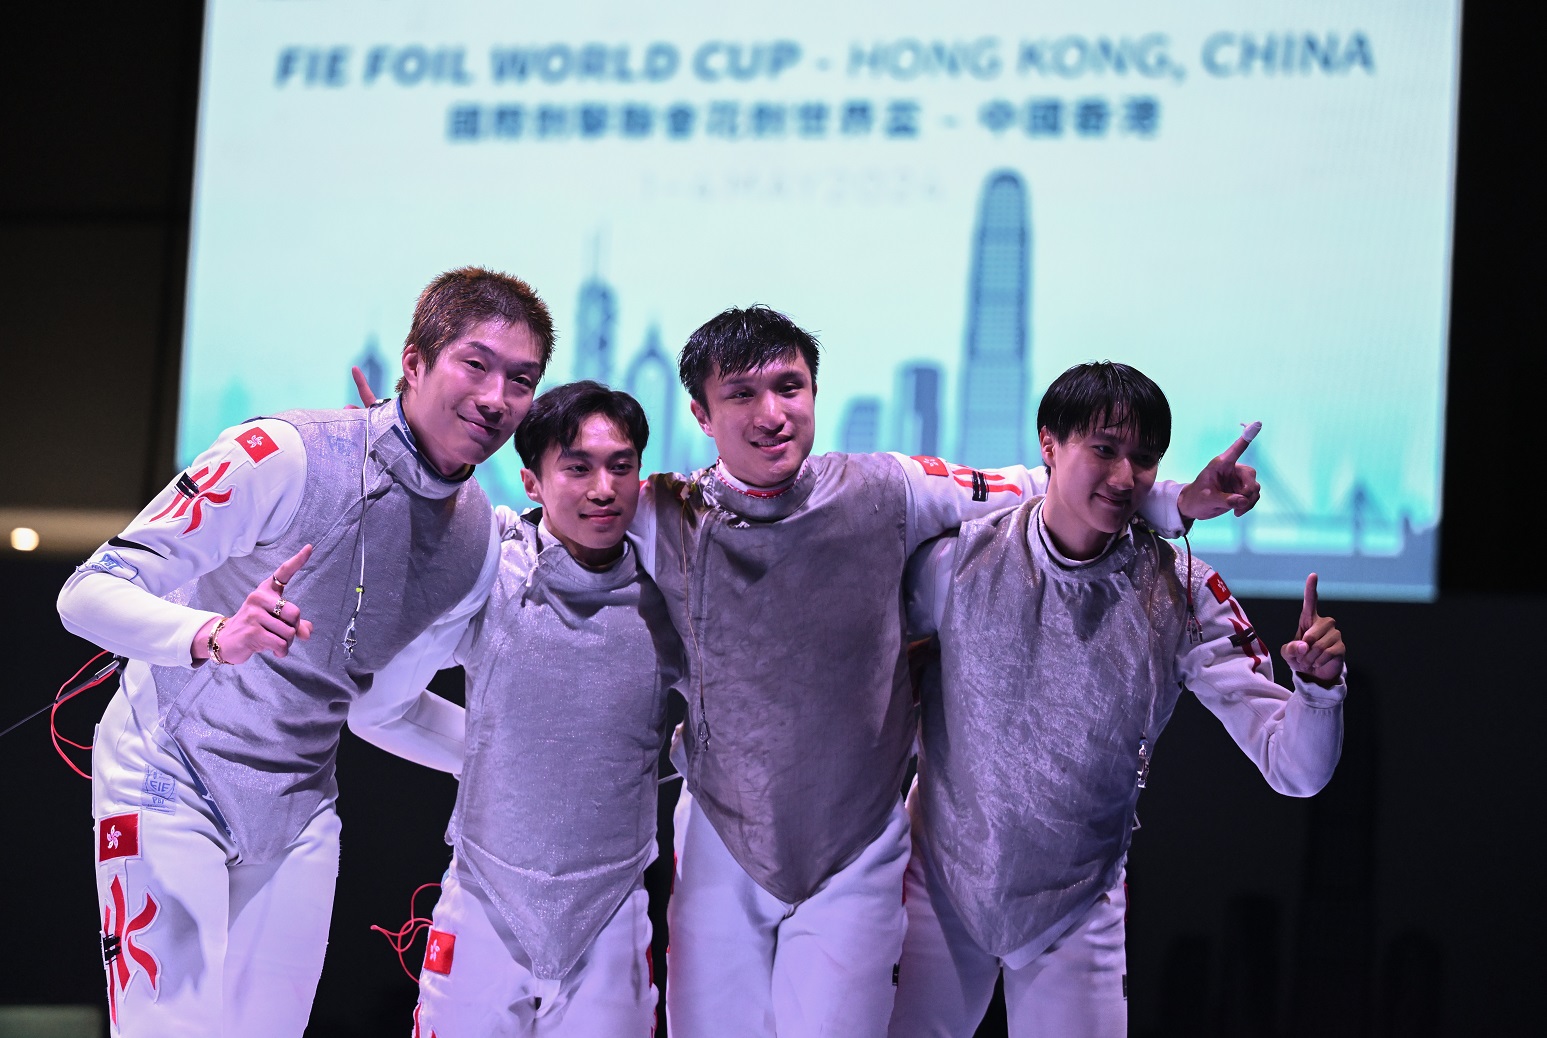 香港剑击运动员张家朗、李逸朗、蔡俊彦和梁千雨夺得国际剑击联会花剑世界杯男子团体赛金牌。(2024)